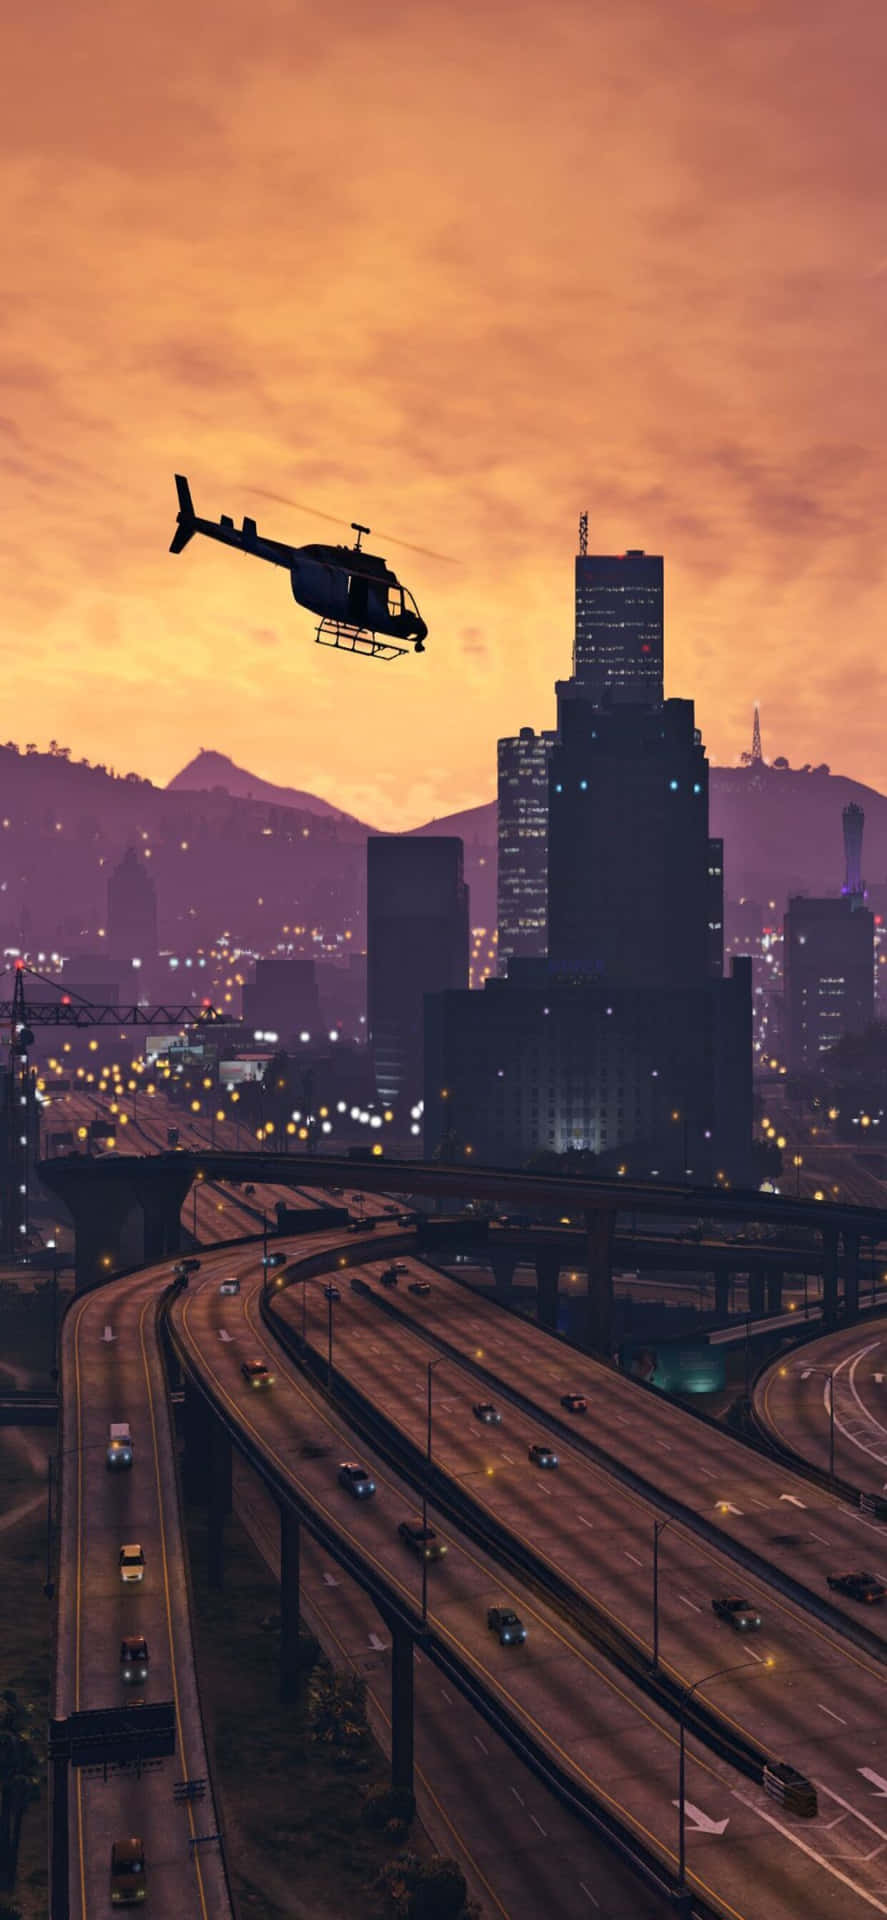 Iphonexs Max Bakgrundsbild Av Grand Theft Auto V, Där En Helikopter Flyger Runt På Motorvägen.